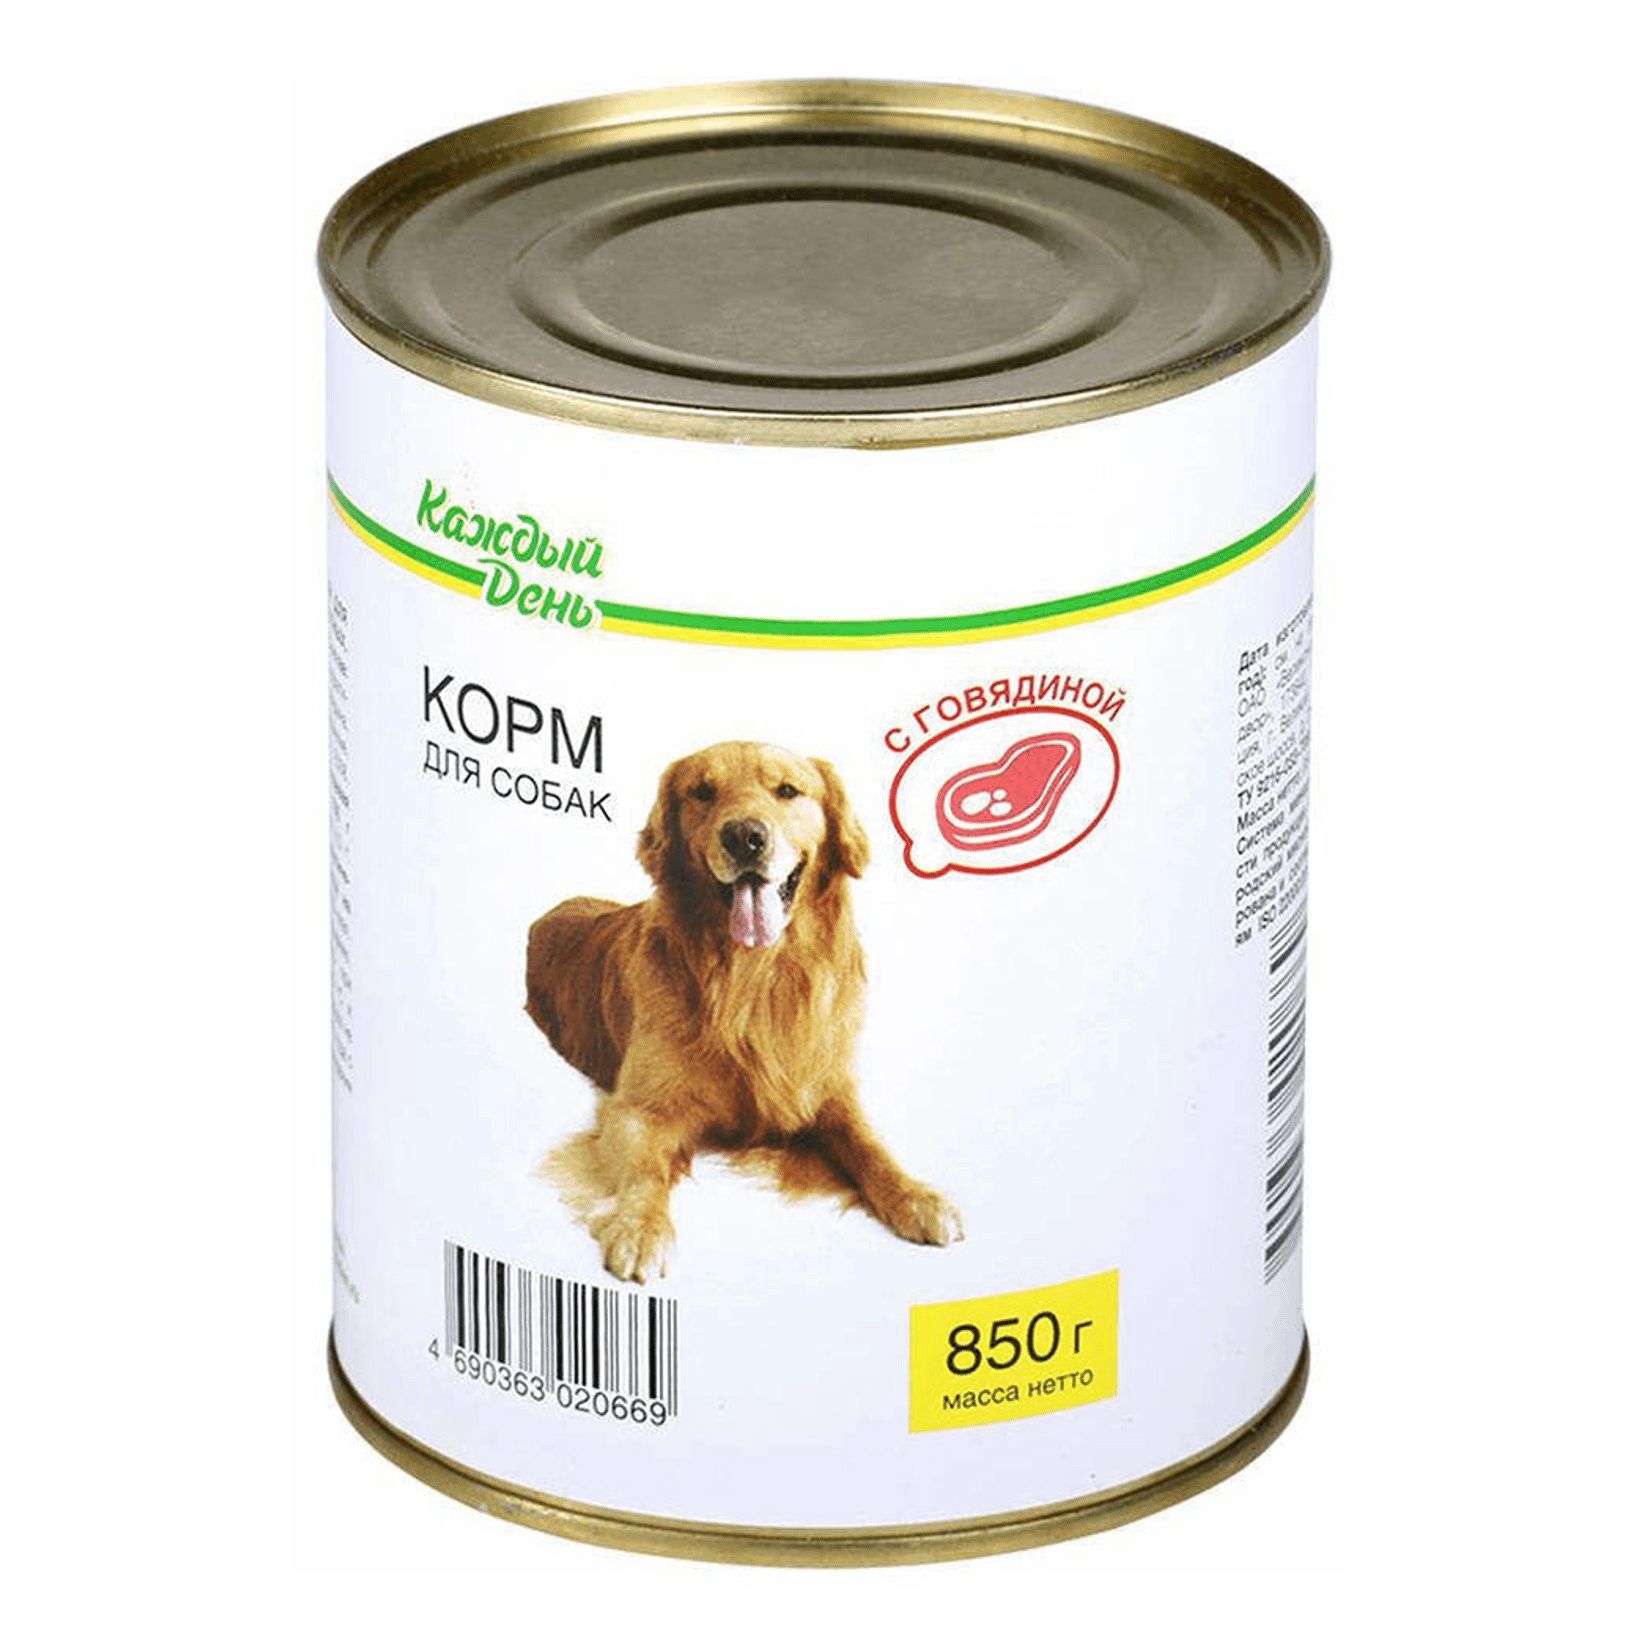 Корм авард для собак купить. Корм для собак каждый день консервы для собак с говядиной (0.85 кг) 1 шт.. Корм для собак darsi (0.85 кг) 1 шт. Консервы для собак: говядина и рис. Корм для собак Rocky (0.25 кг) 1 шт. Паштет с говядиной для щенков. Корм для собак Aras (0.82 кг) 1 шт. Premium select для собак - говядина с овощами и рисом.